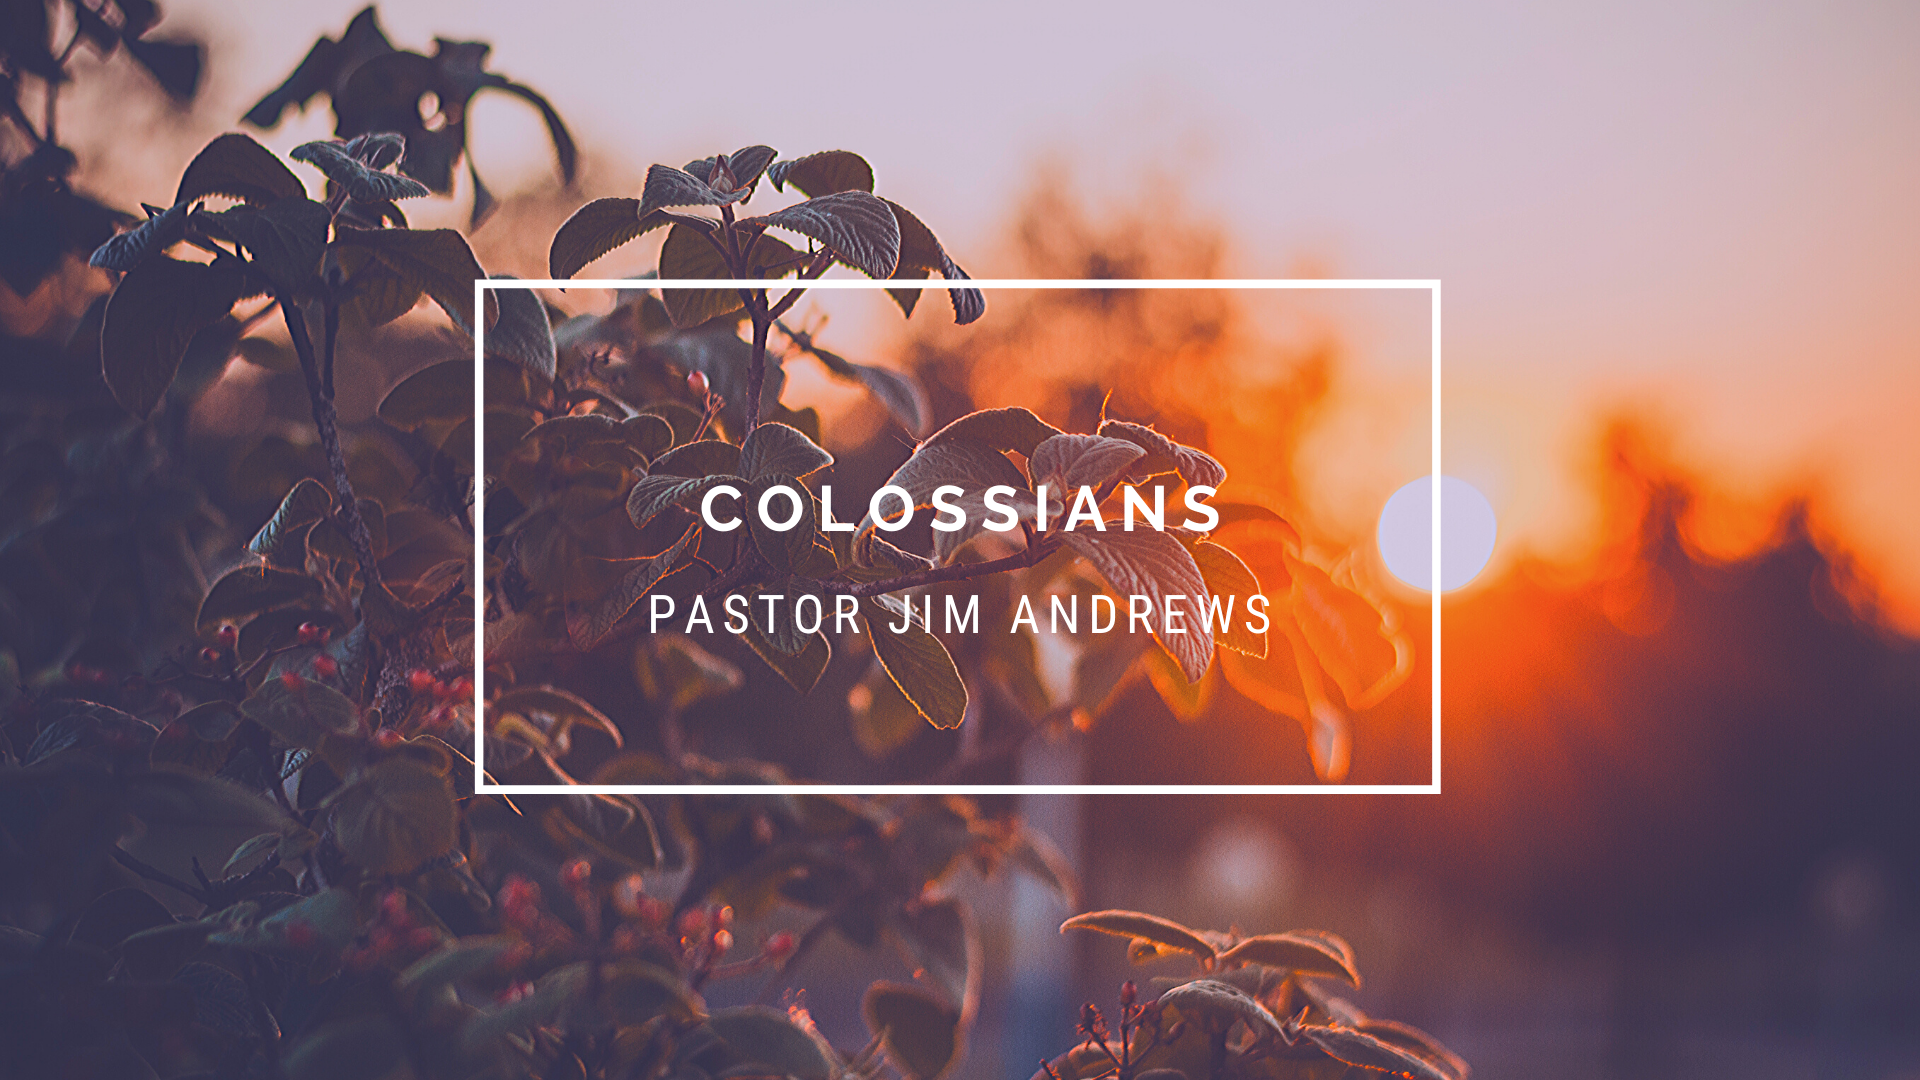 Colossians 3:16-17